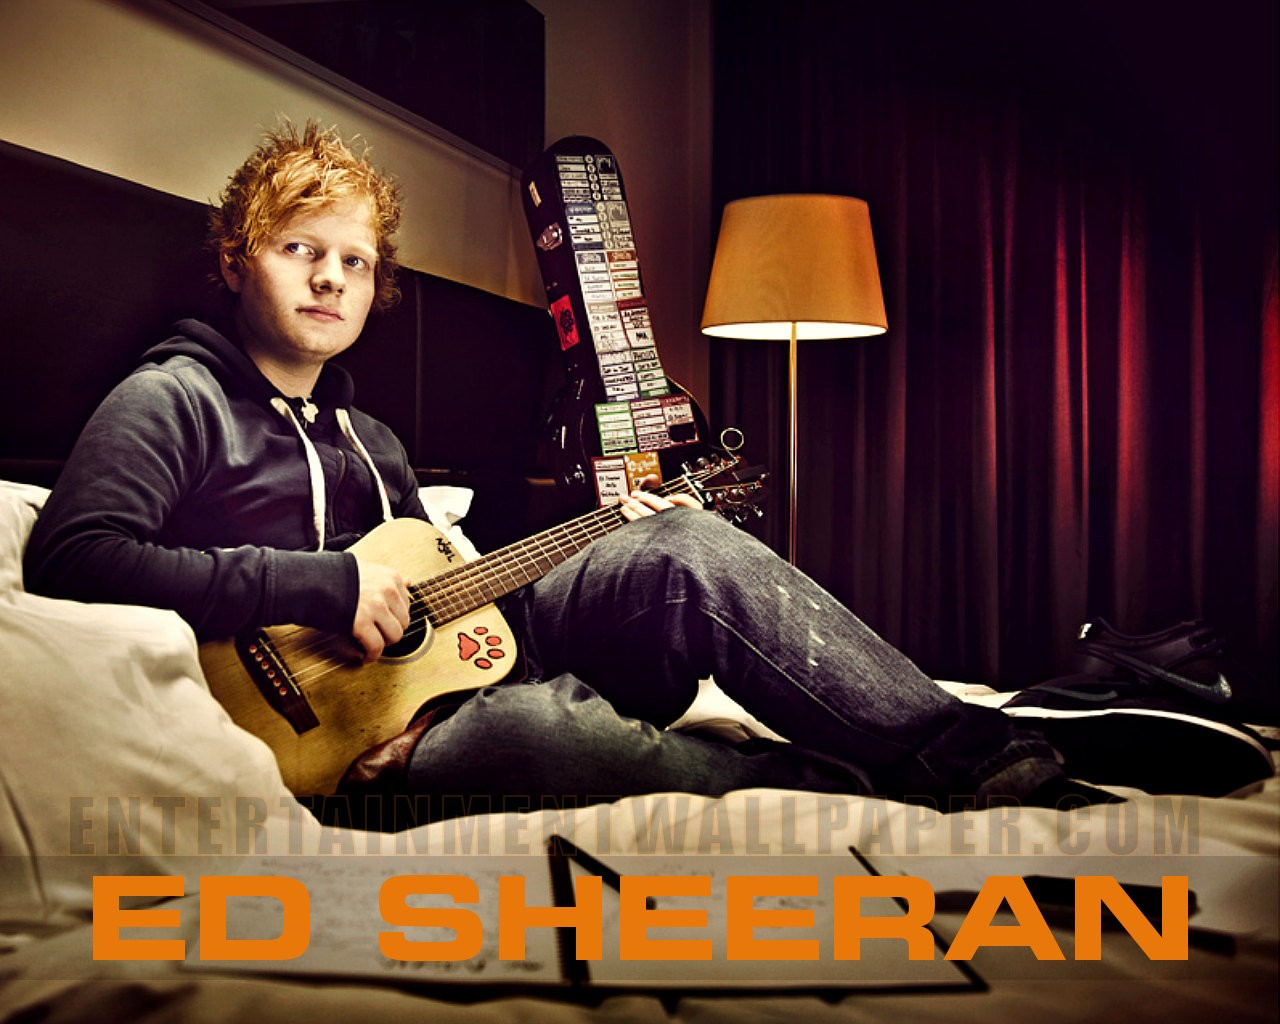 Ed Sheeran X Ed Sheeran Wallpaper 32982728 Fanpop HD Wallpapers Download Free Images Wallpaper [wallpaper981.blogspot.com]